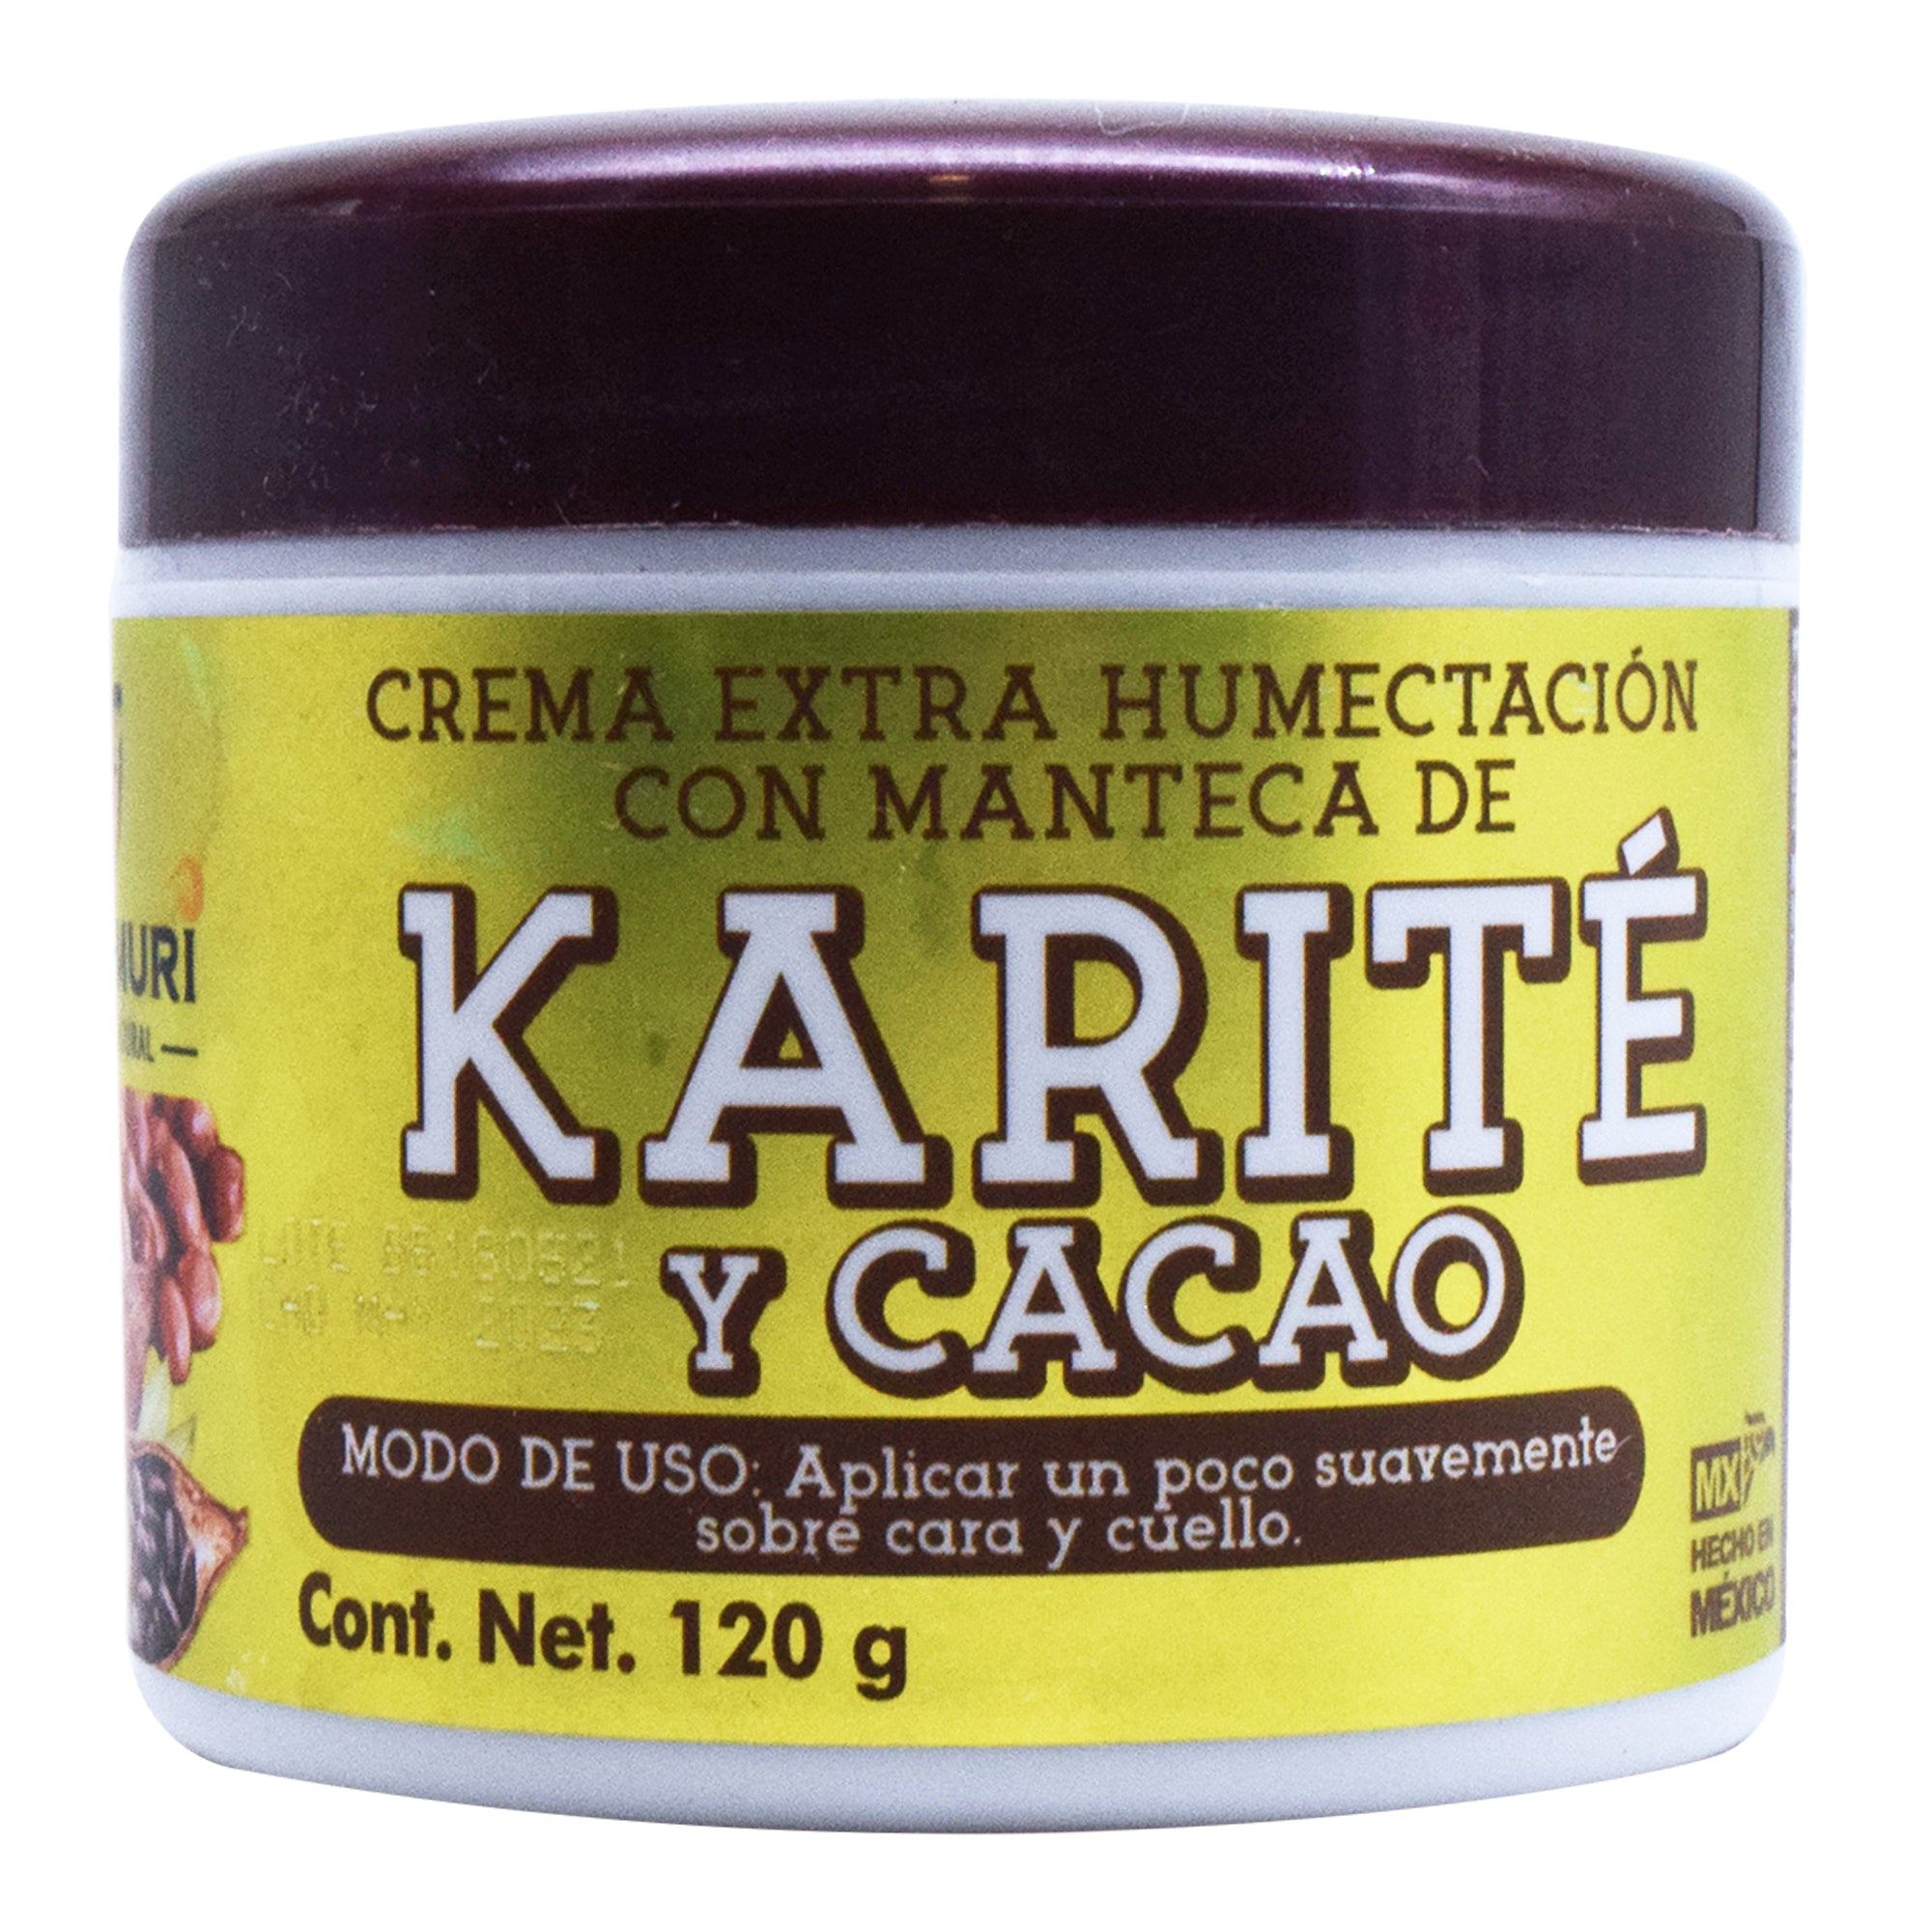 CREMA DE KARITE Y CACAO 120 G